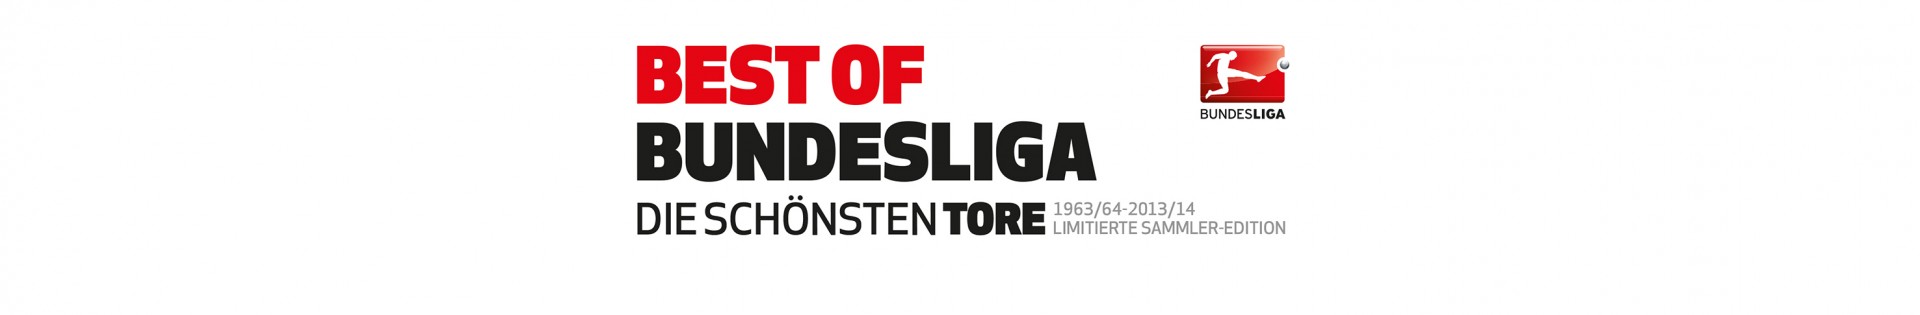 Best of Bundesliga – Die schönsten Tore